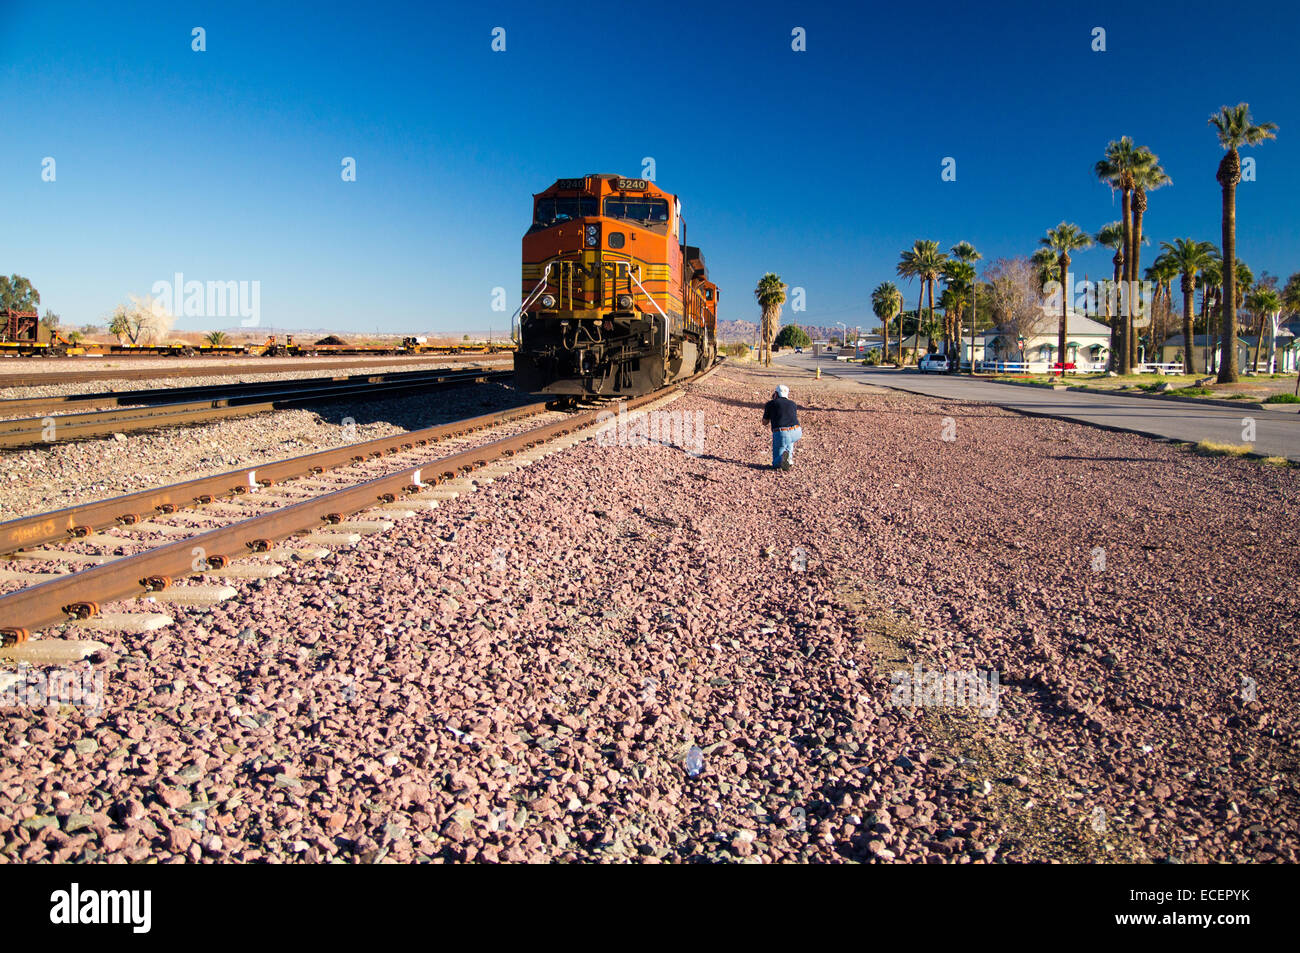 Fotograf fängt Bild von Markanten orangefarbenen und gelben Burlington Northern Santa Fe lok Güterzug. 5240 Stockfoto